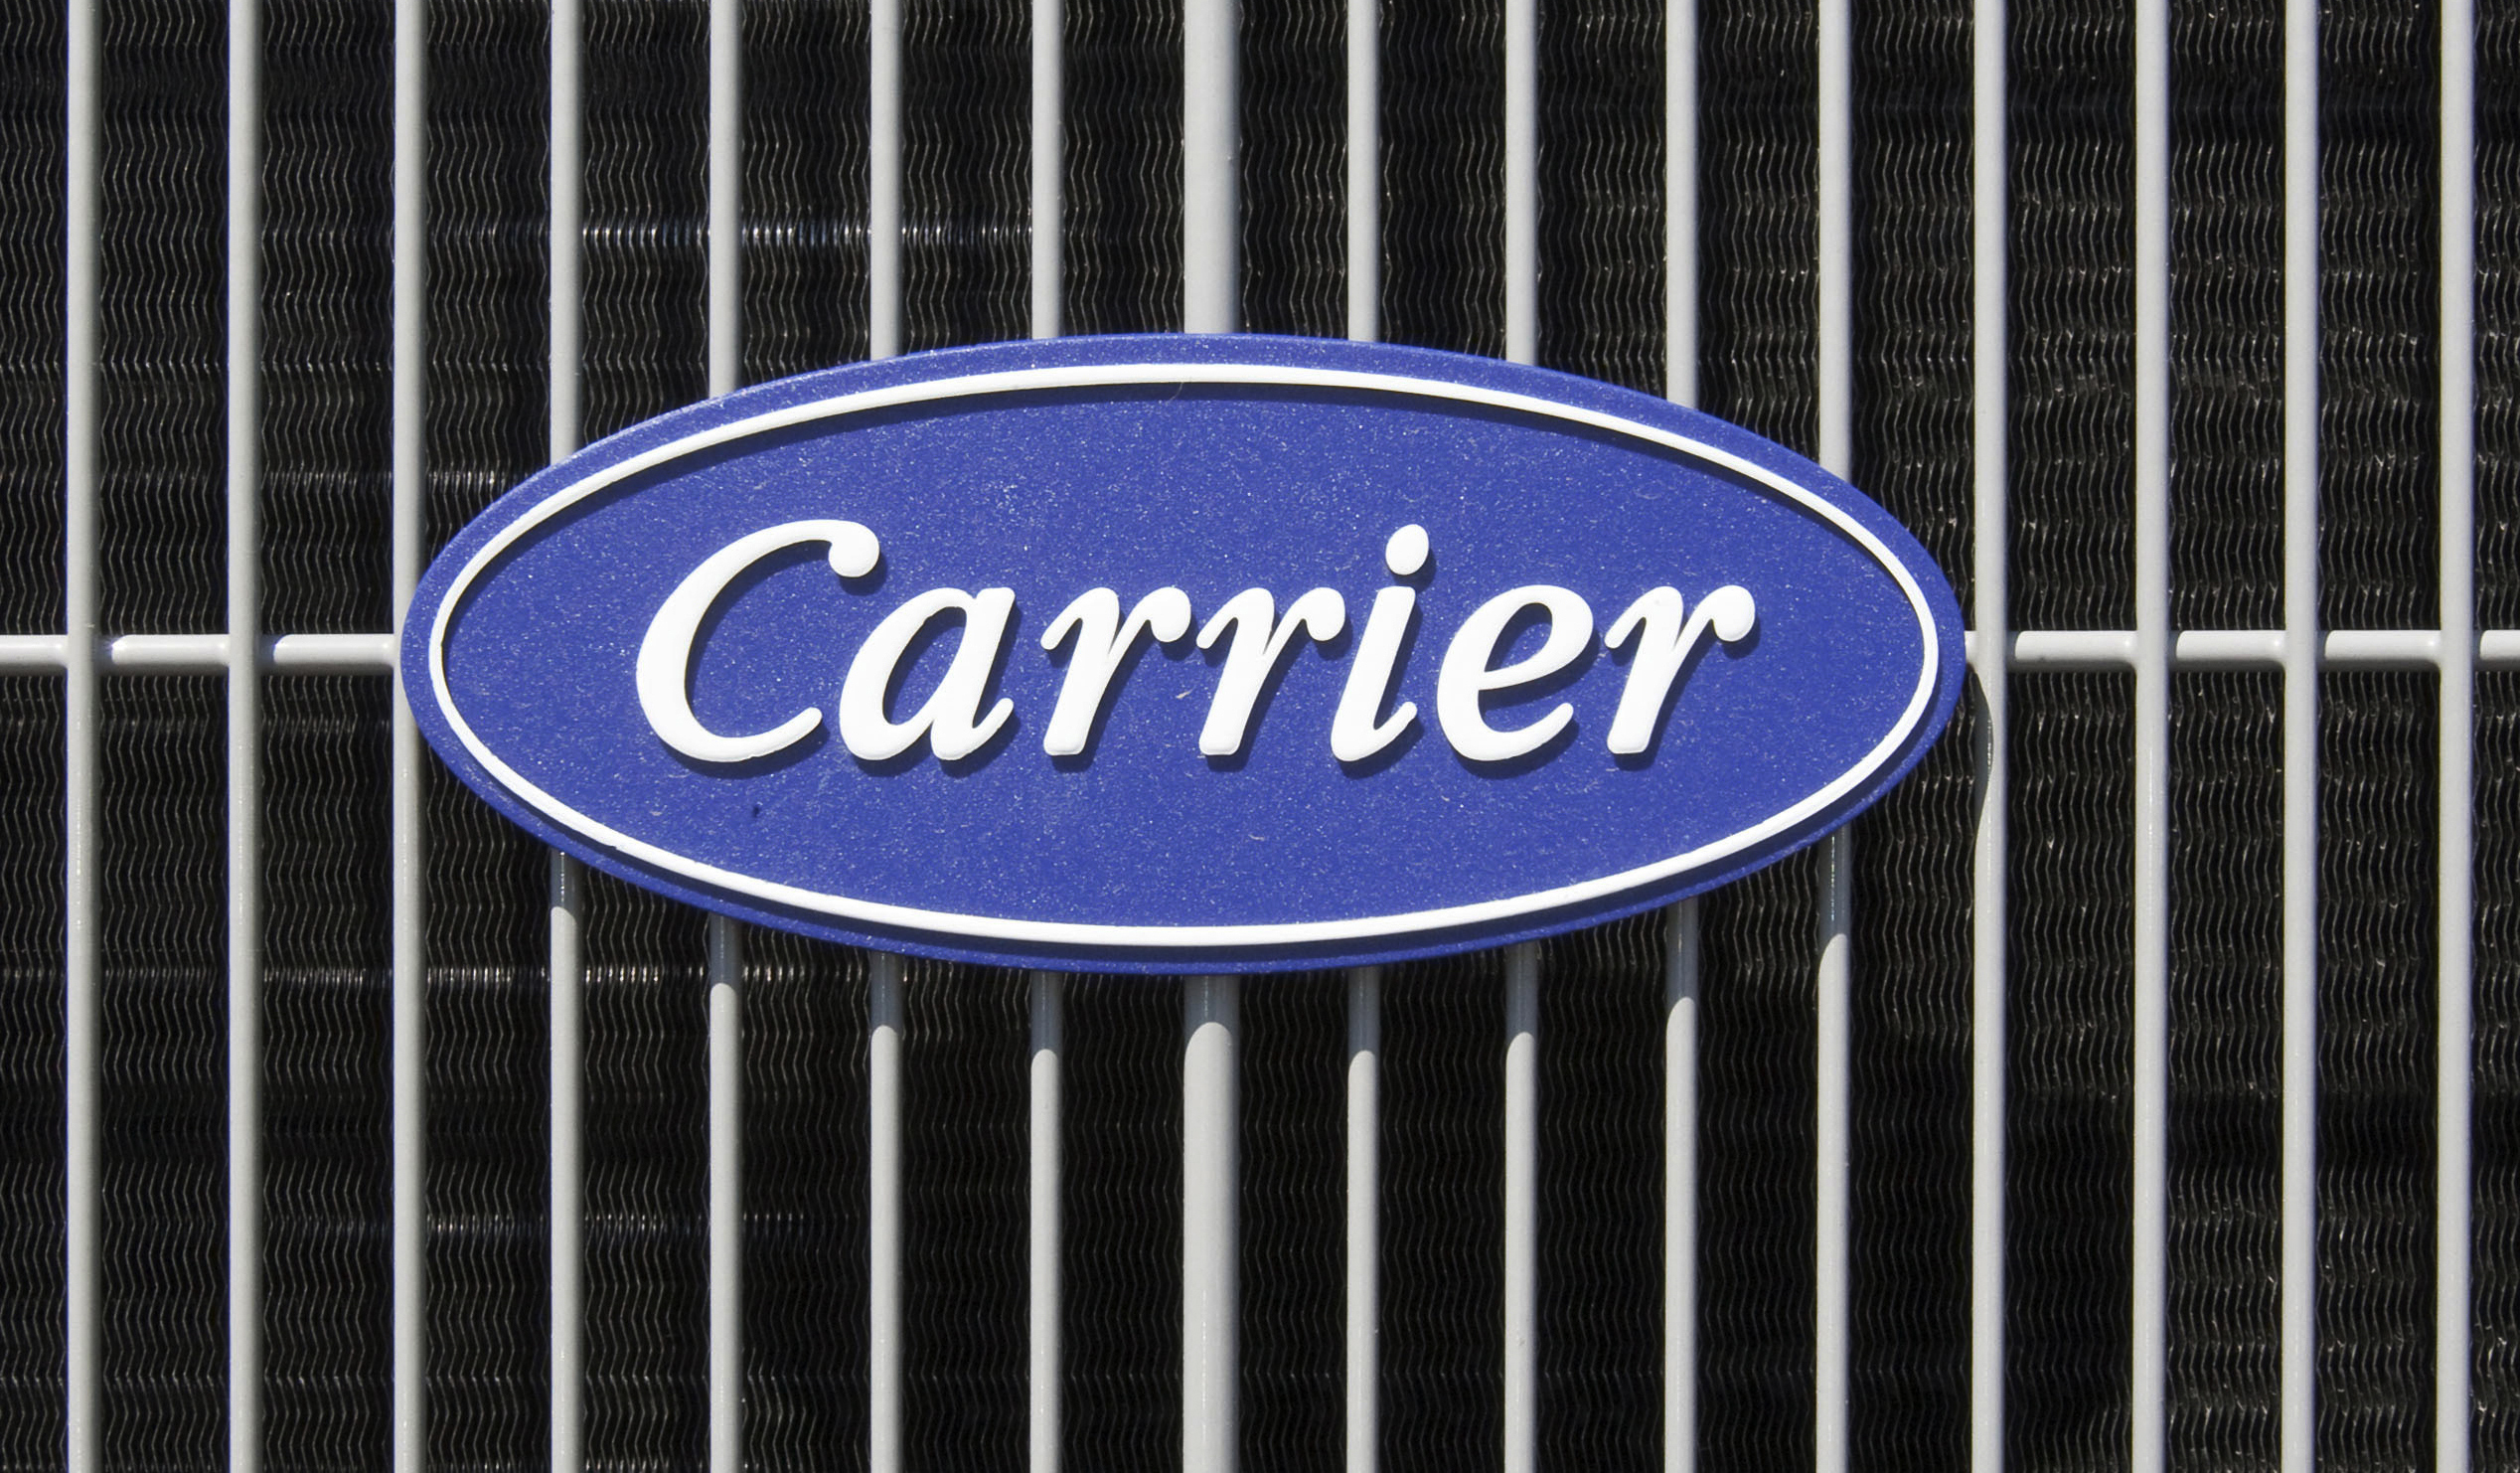 Trump prometió ambiente más competitivo: Carrier